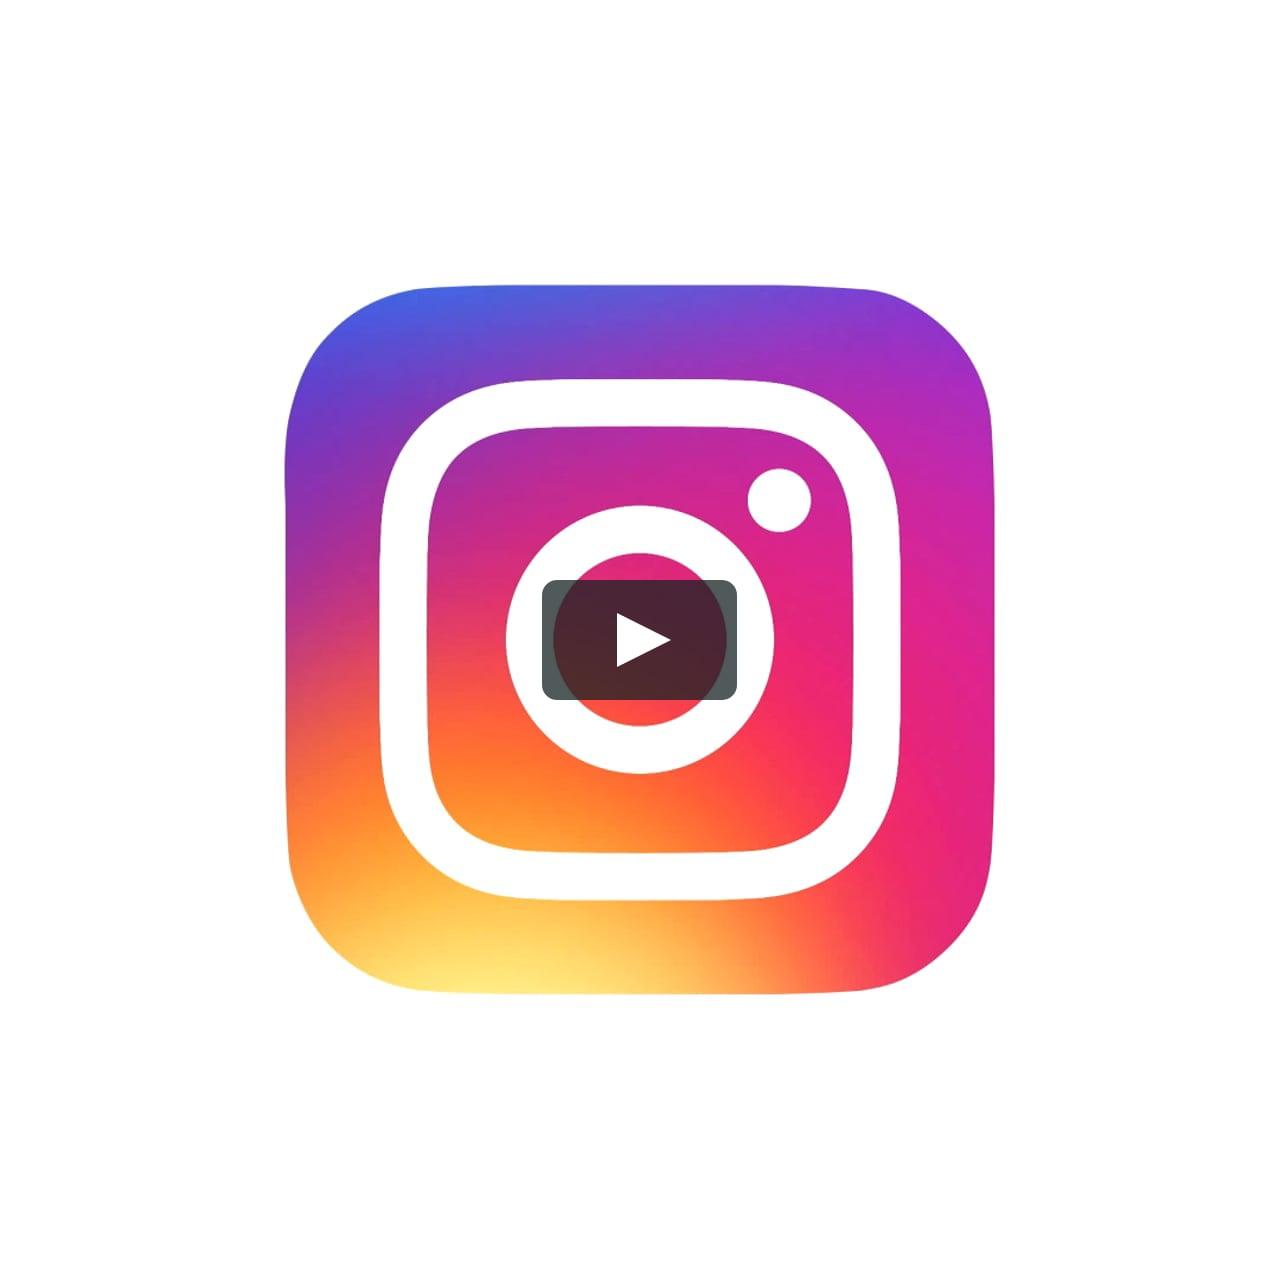 Intagram Logo - The Evolution of the Instagram Logo